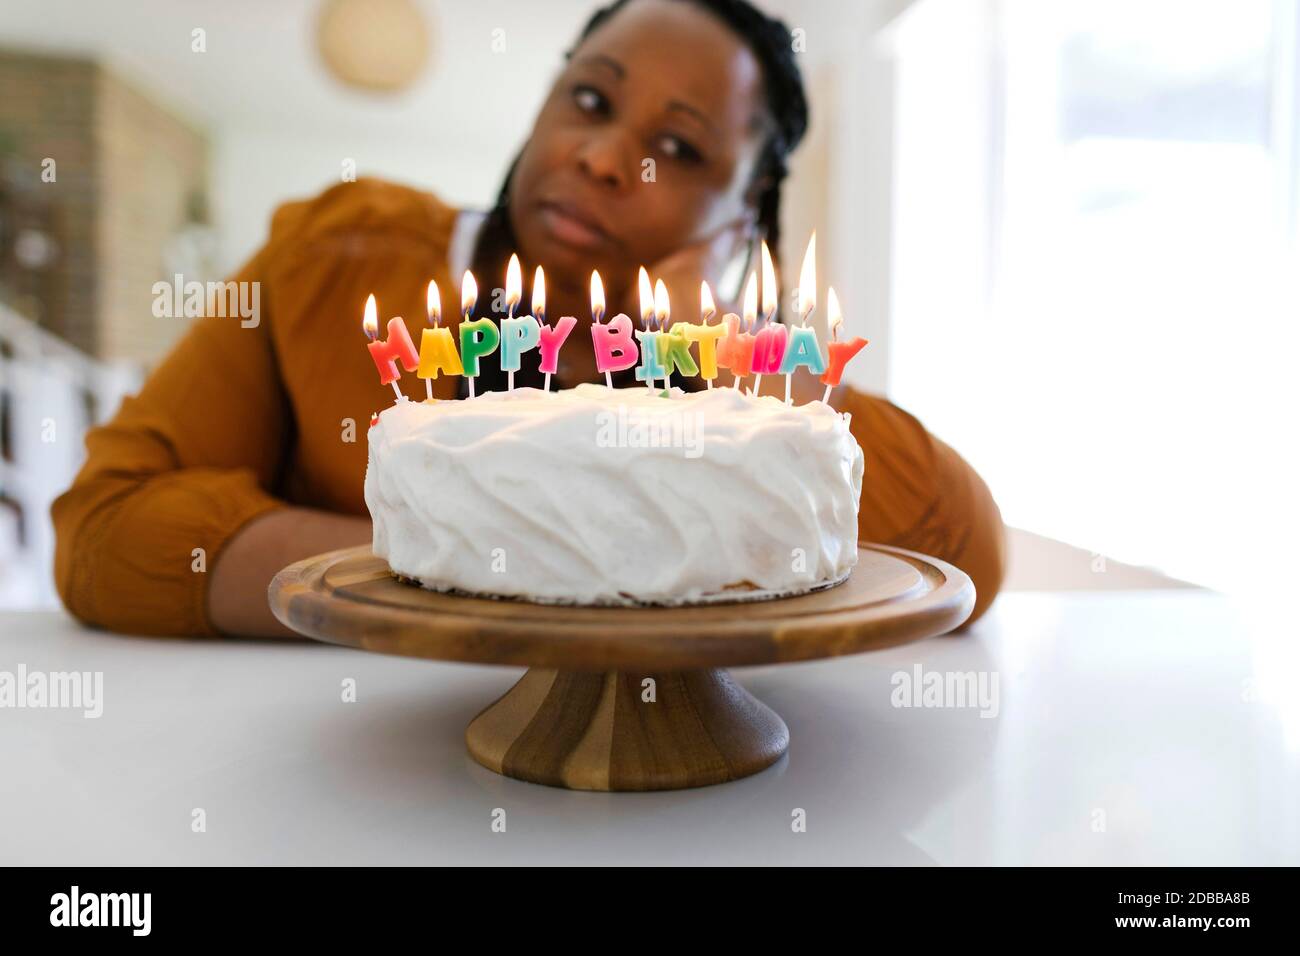 Portrait de la femme derrière le gâteau d'anniversaire Banque D'Images